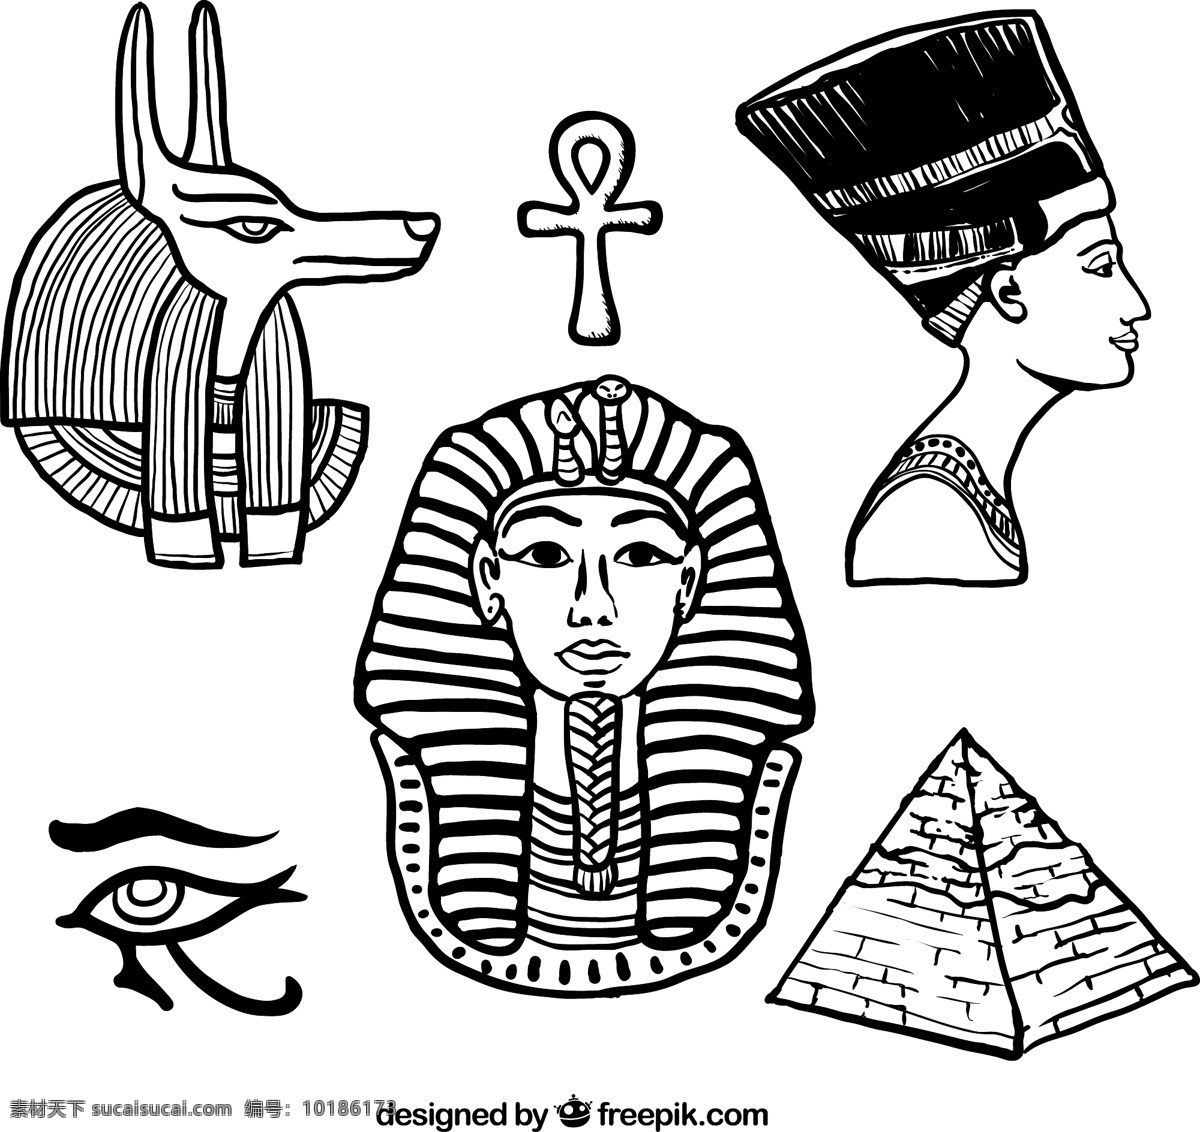 埃及元素 埃及 阿努比斯 沙漠 埃及人 埃及旅游 神象 荷鲁斯神话 法老 金字塔 人头狮身 狮身人面像 古埃及 埃及文化 传统文化 文明古国 四大古国 猫 平面素材